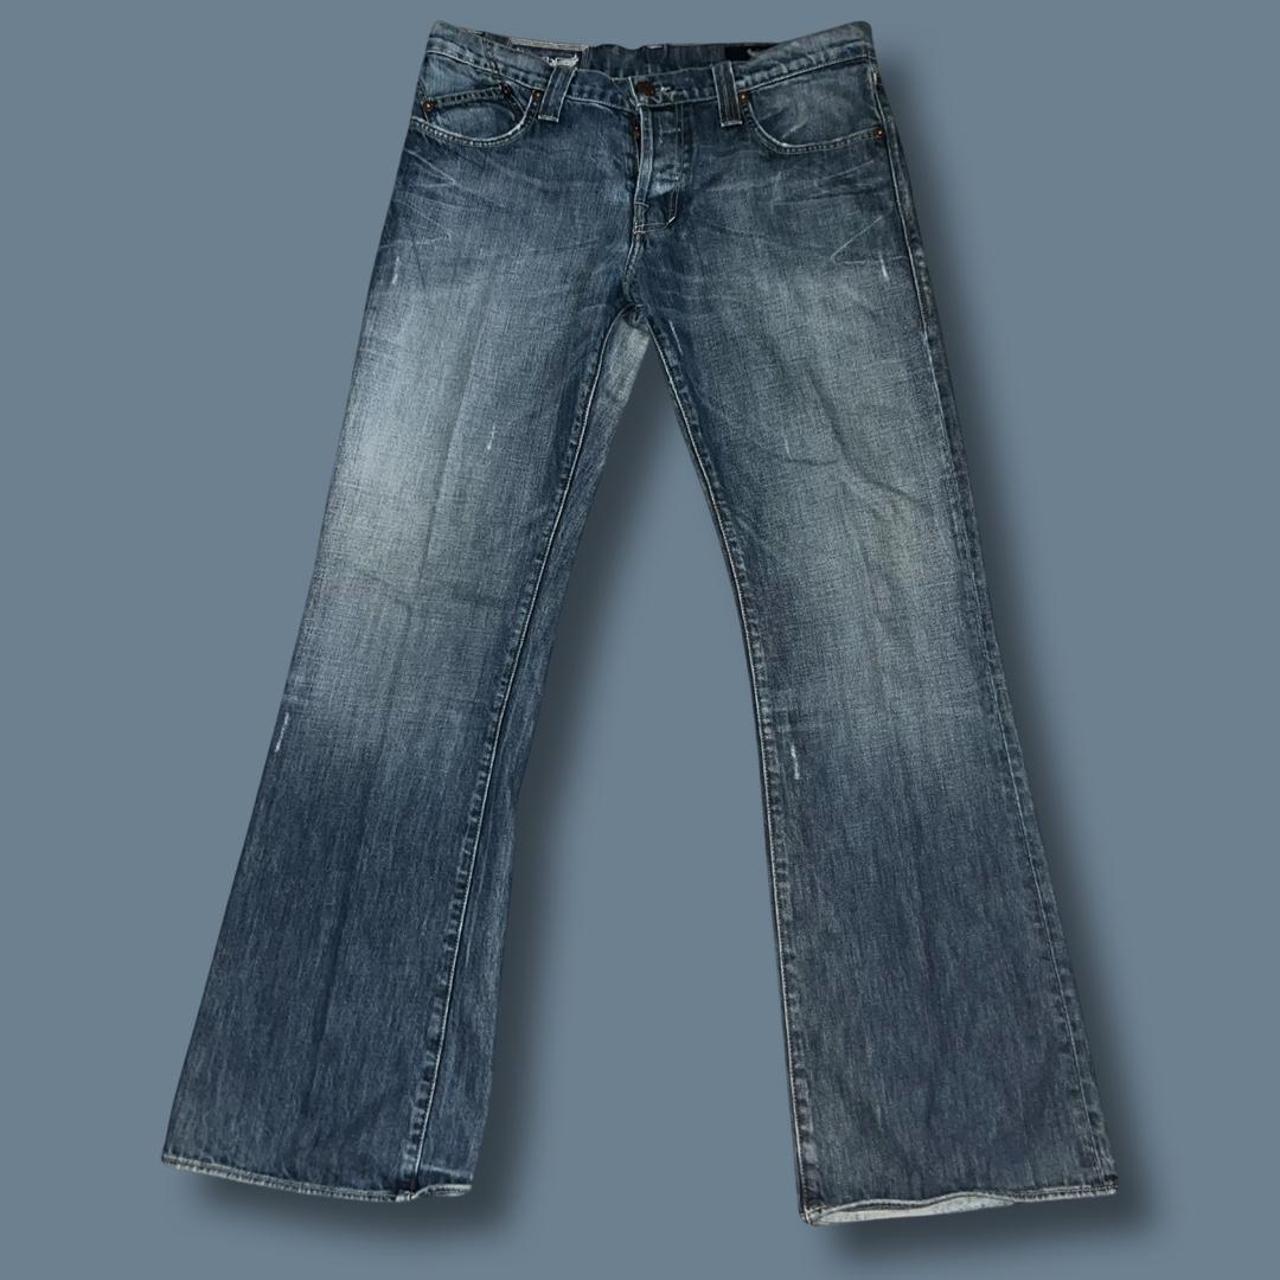 Rock and Republic Men's Blue Jeans (2)